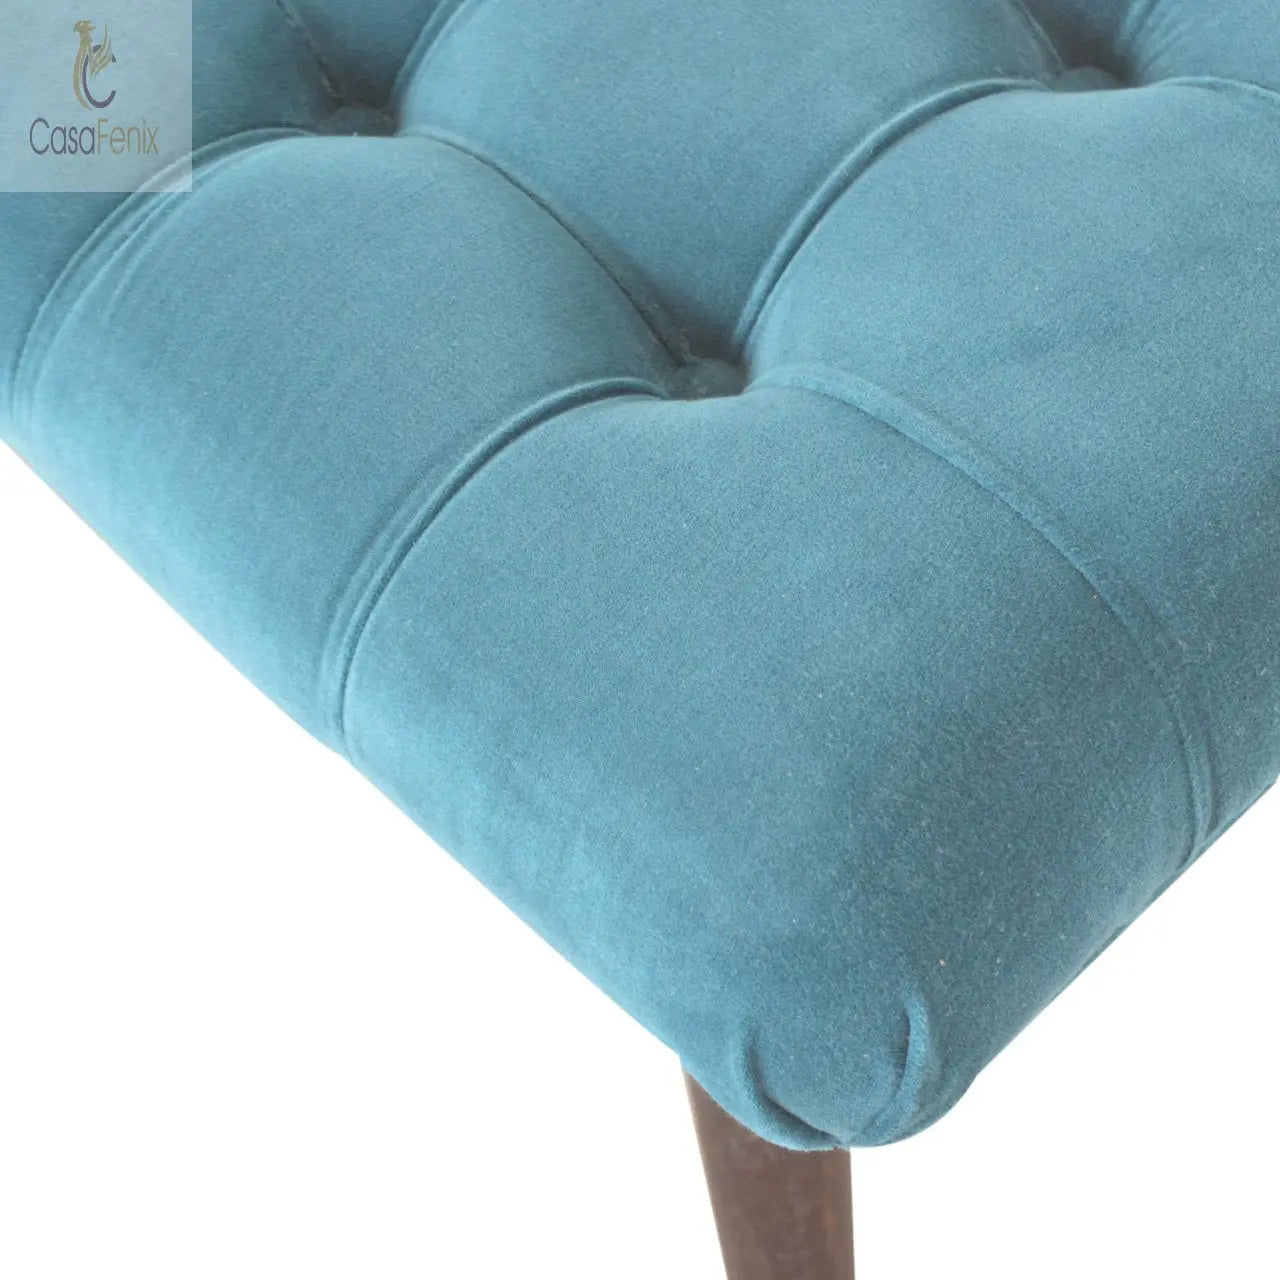 Teal Cotton Velvet Upholstered Curved Bench - CasaFenix